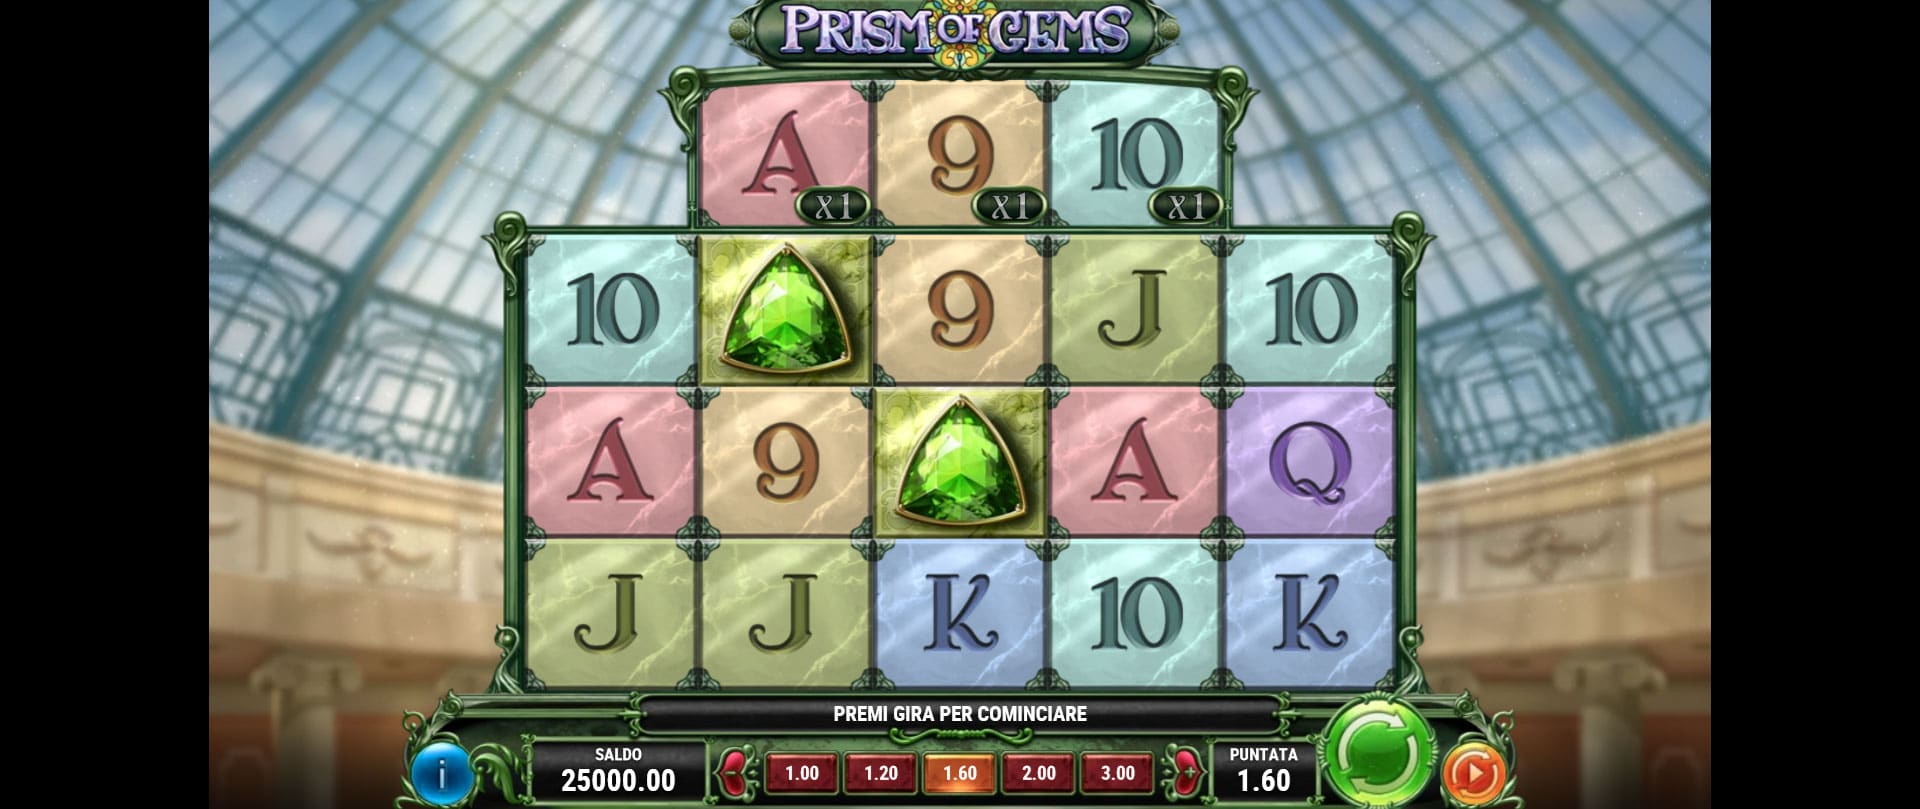 griglia di gioco della slot online prism of gems